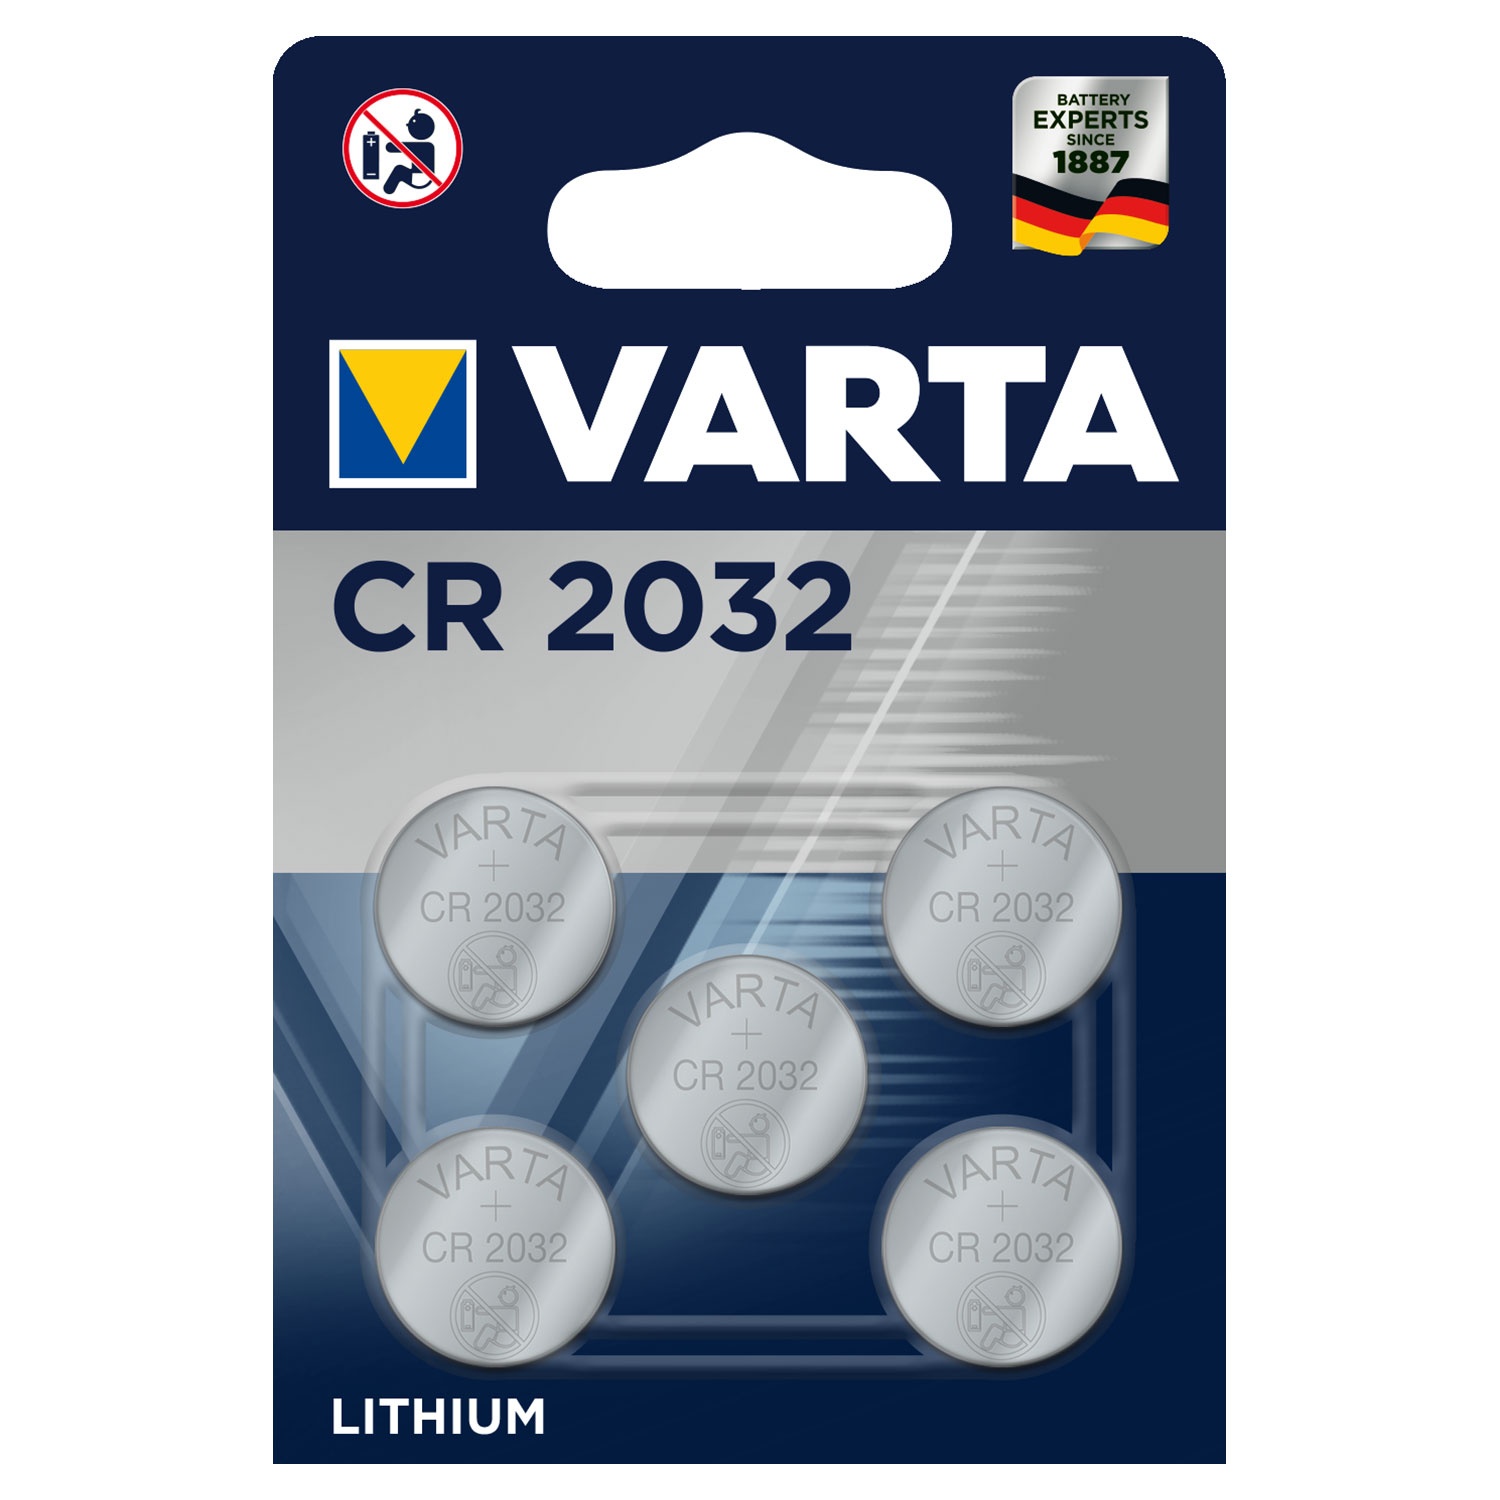 VARTA Lithium-Knopfzellen oder Alkaline-Batterien